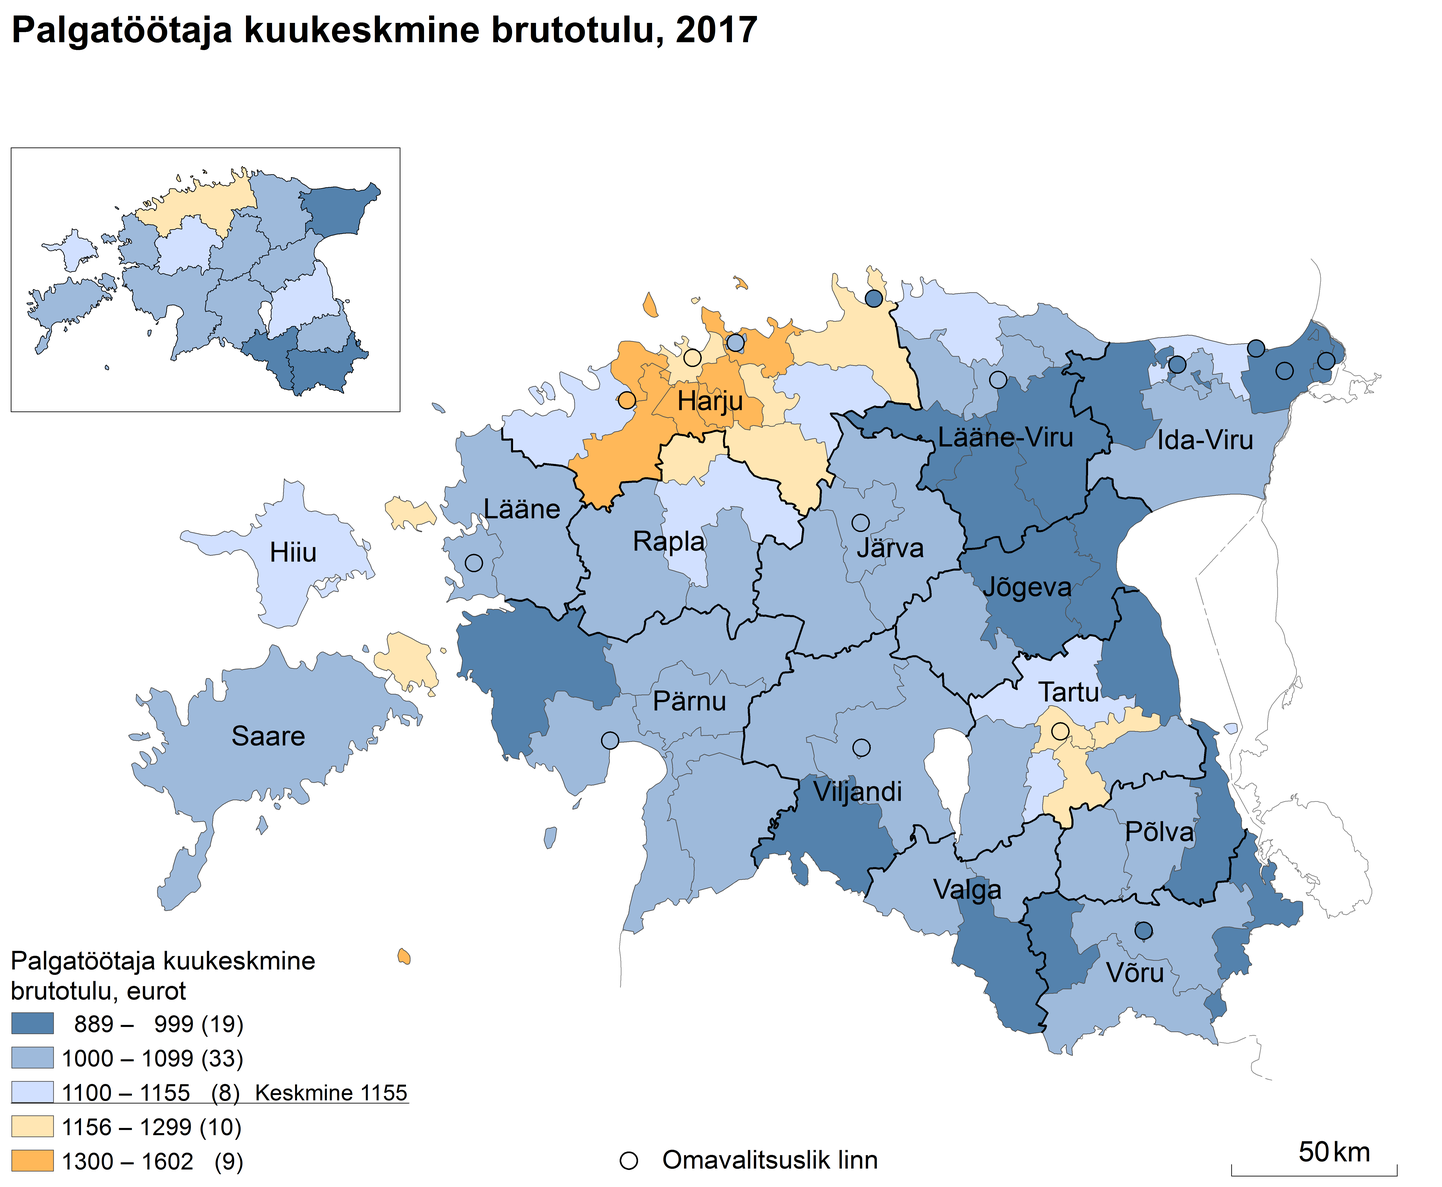 Palgatöötaja kuu keskmine brutotulu Eestis 2017. aastal